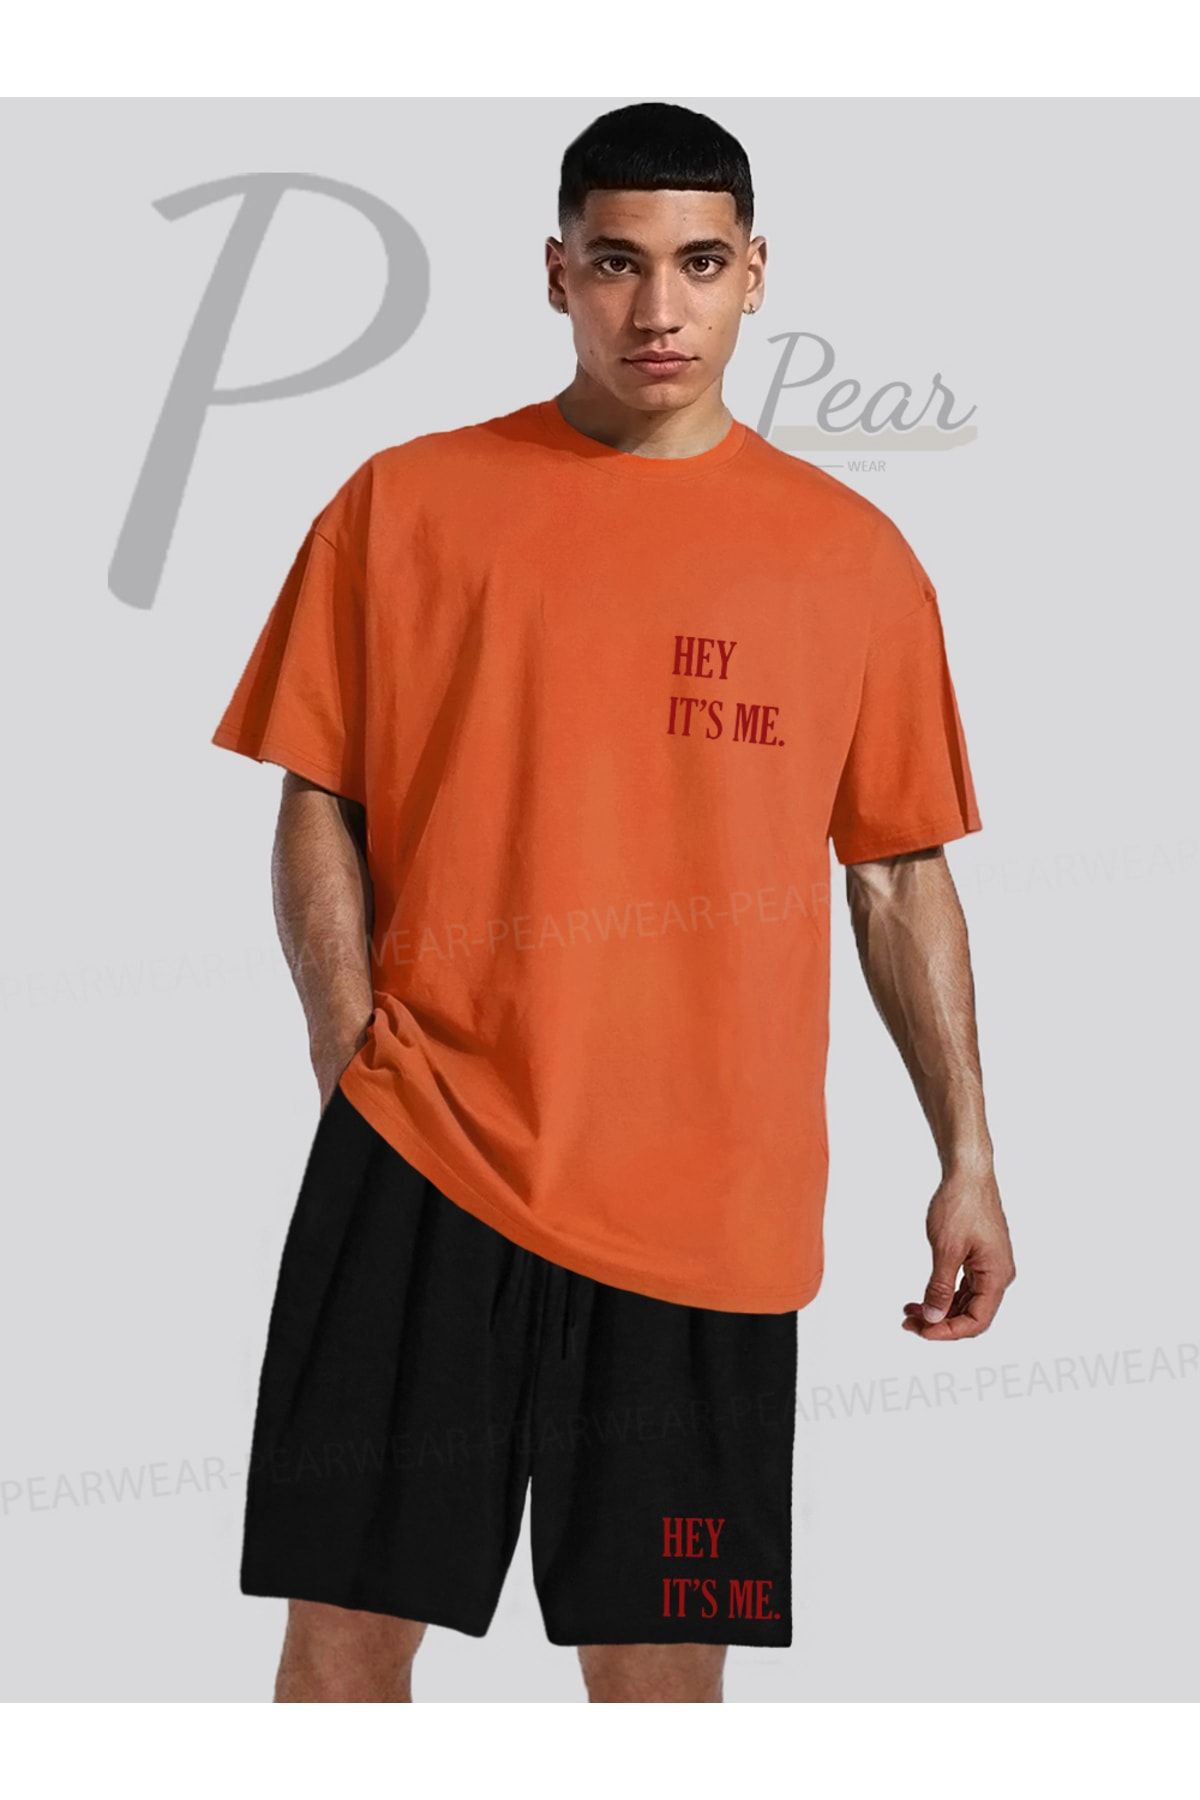 Pear Wear Hey Its Me Baskılı Oversize Tişört Regular Fit Şort T-Shirt Şort İkili Takım